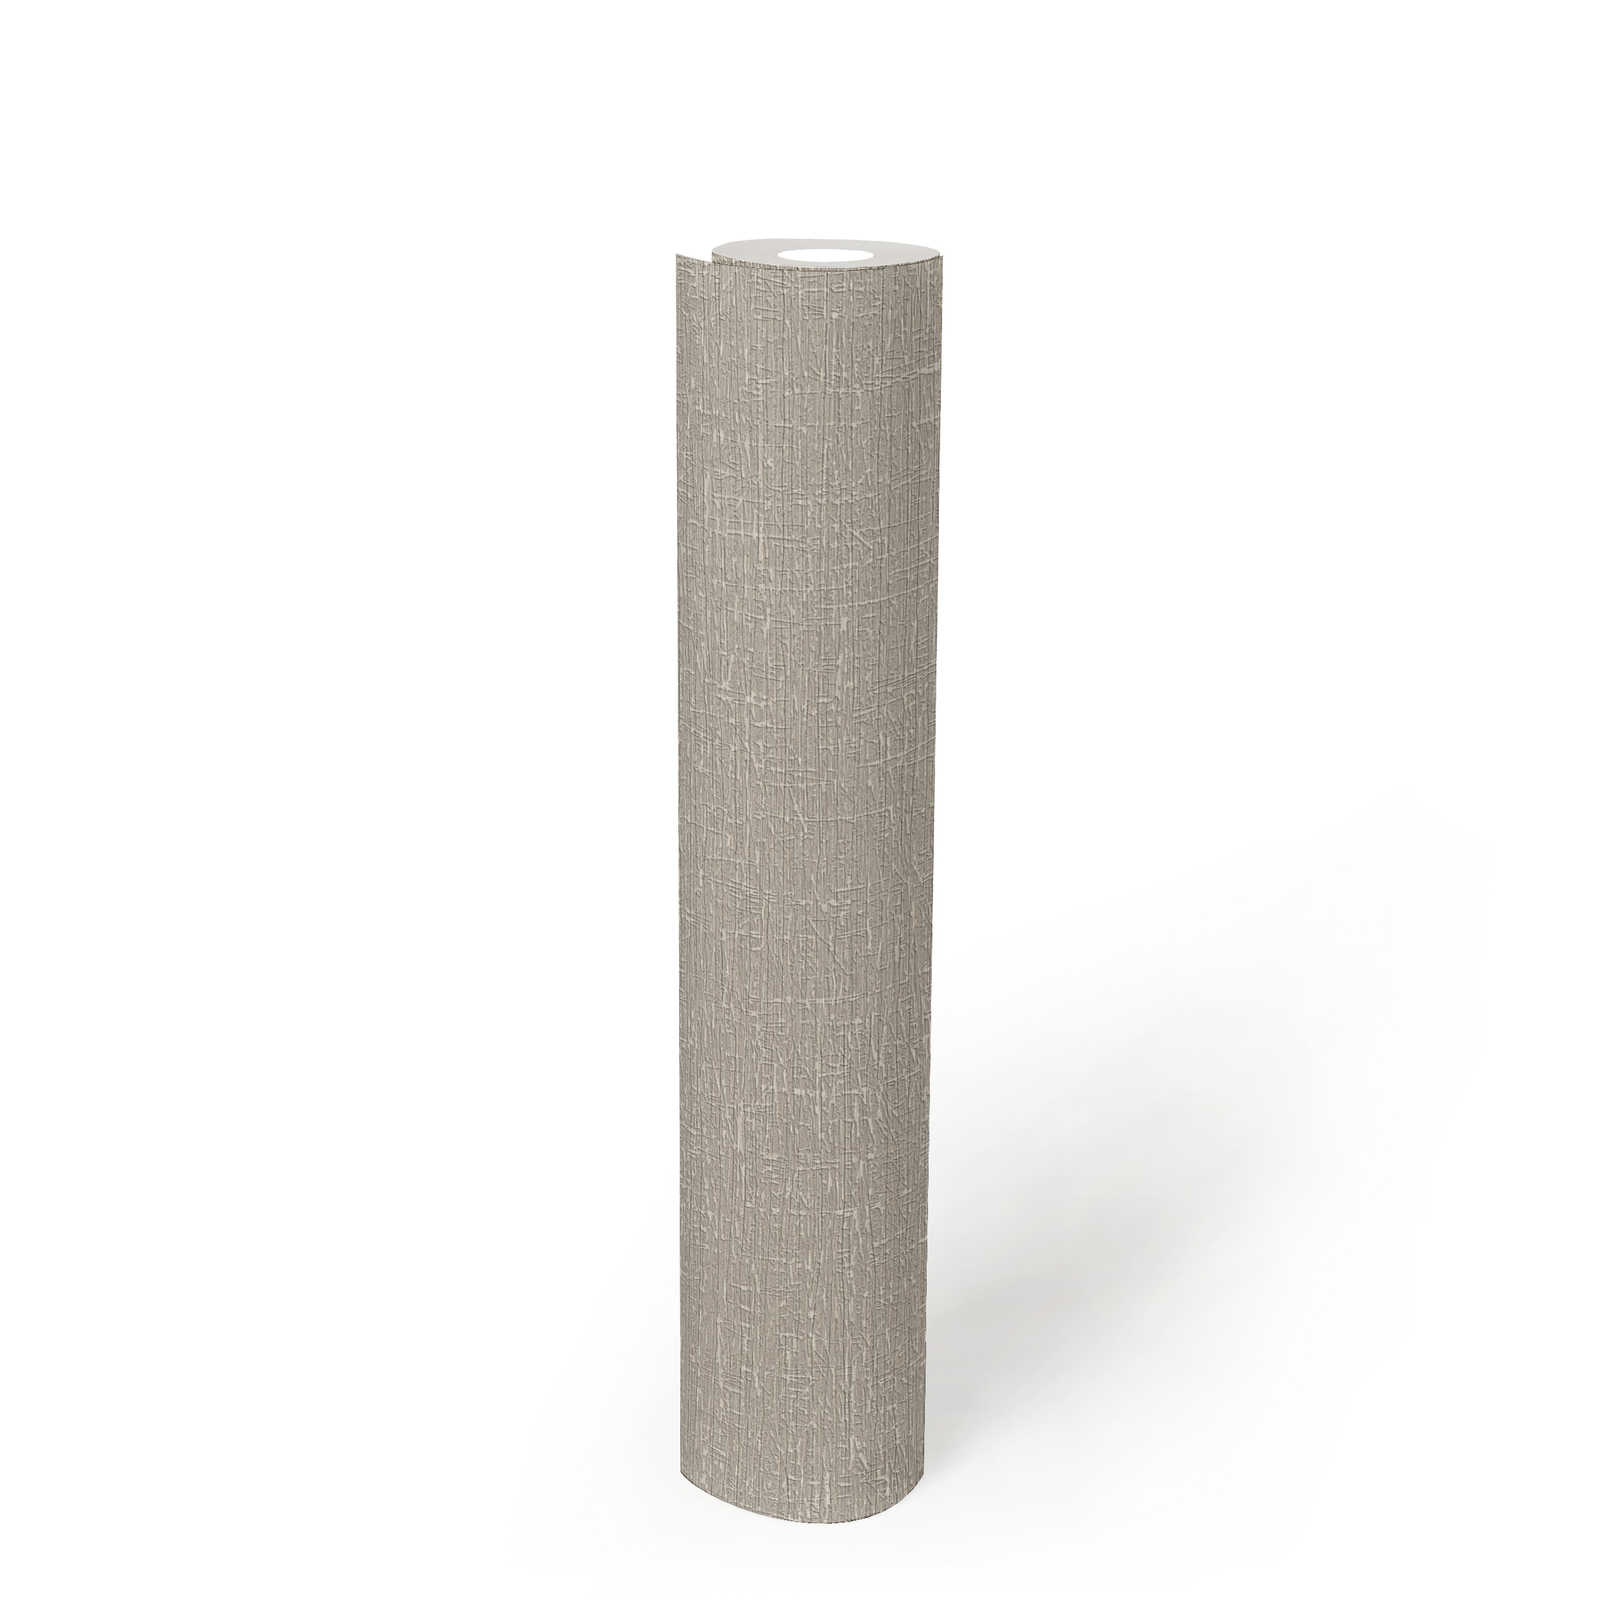             Textured non-woven wallpaper in matt look - beige
        